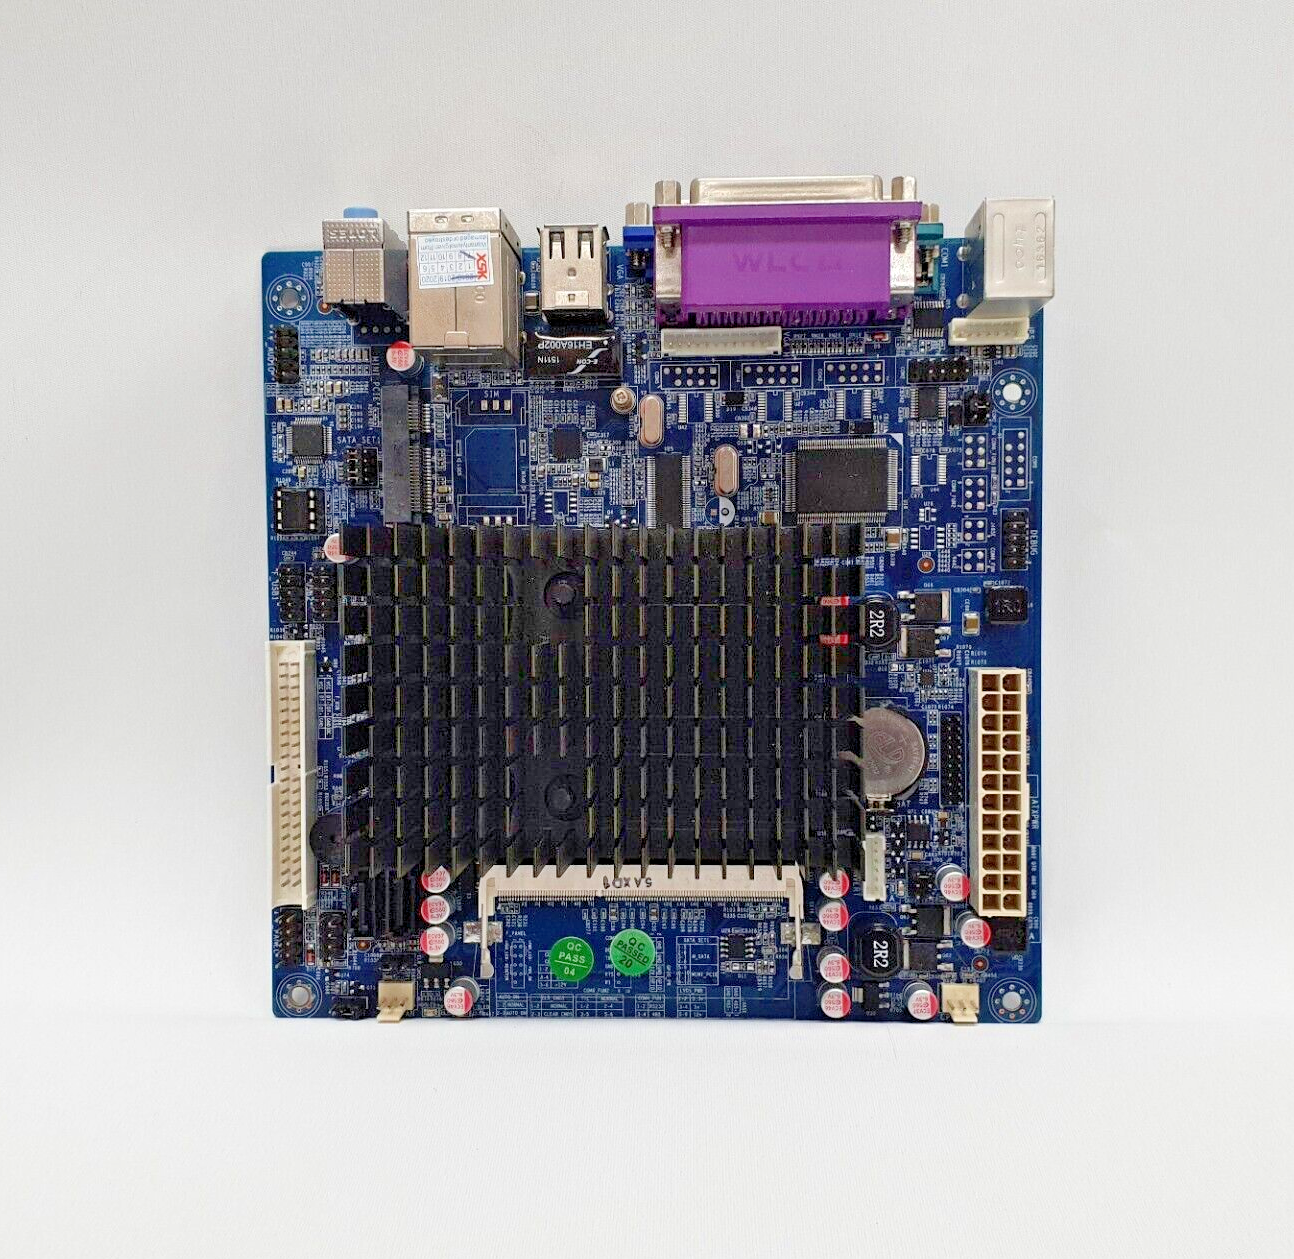 New ITX-N455 Mini-ITX Motherboard, Intel ATOM N455